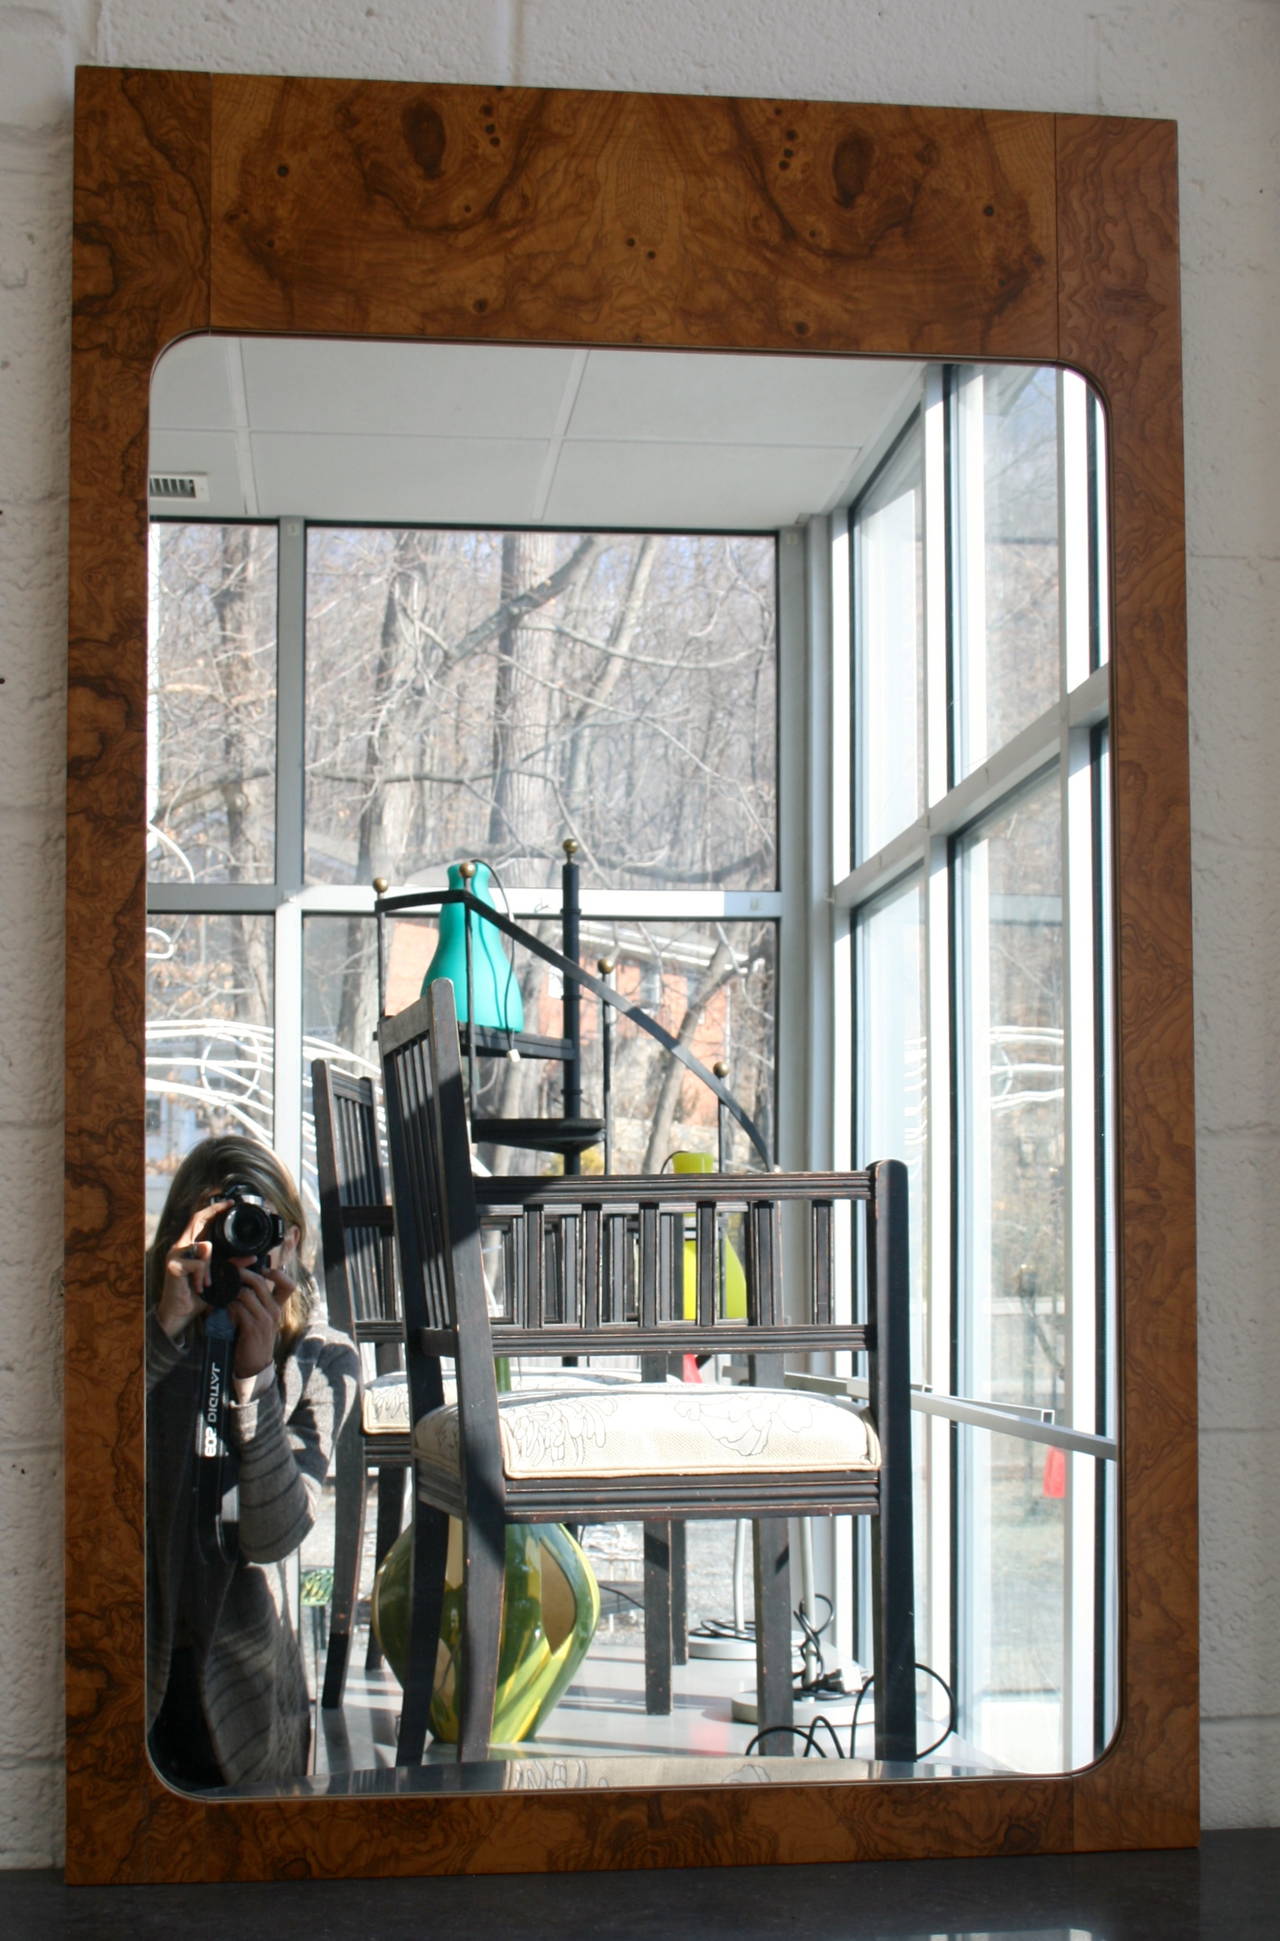 Milo Baughman style olive burl wood veneer mirror by Lane.